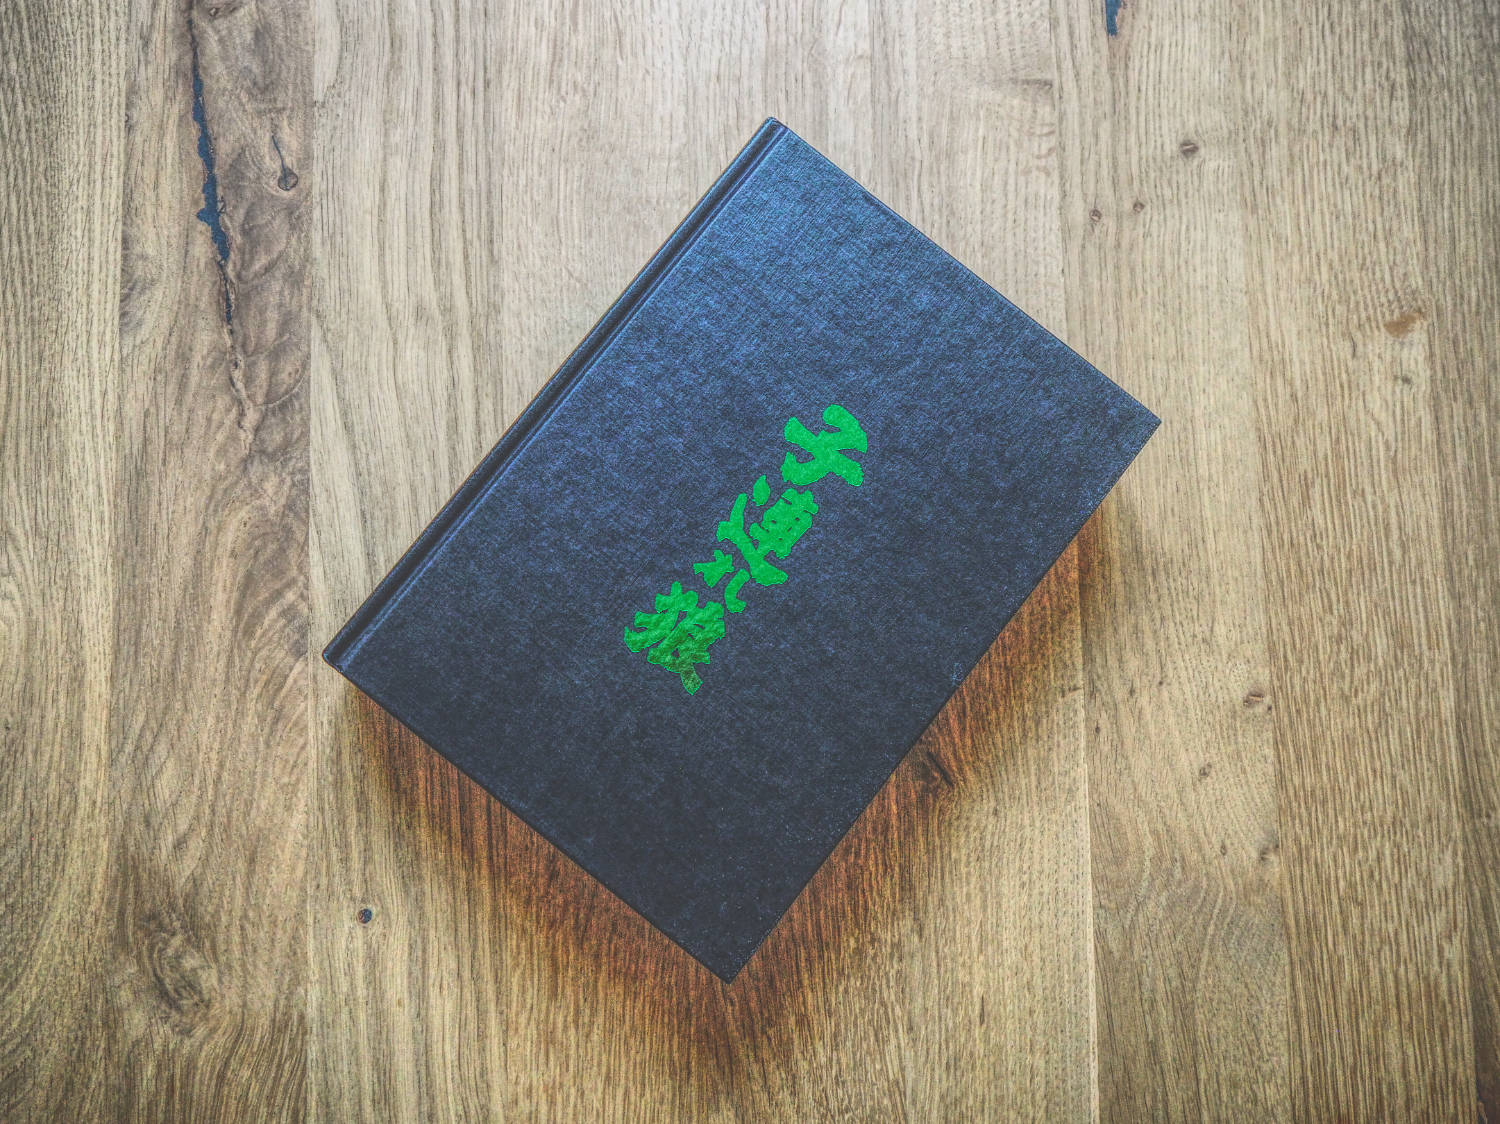 Ein schwarzes Buch mit grüner Schrift darauf auf einem Holztisch.